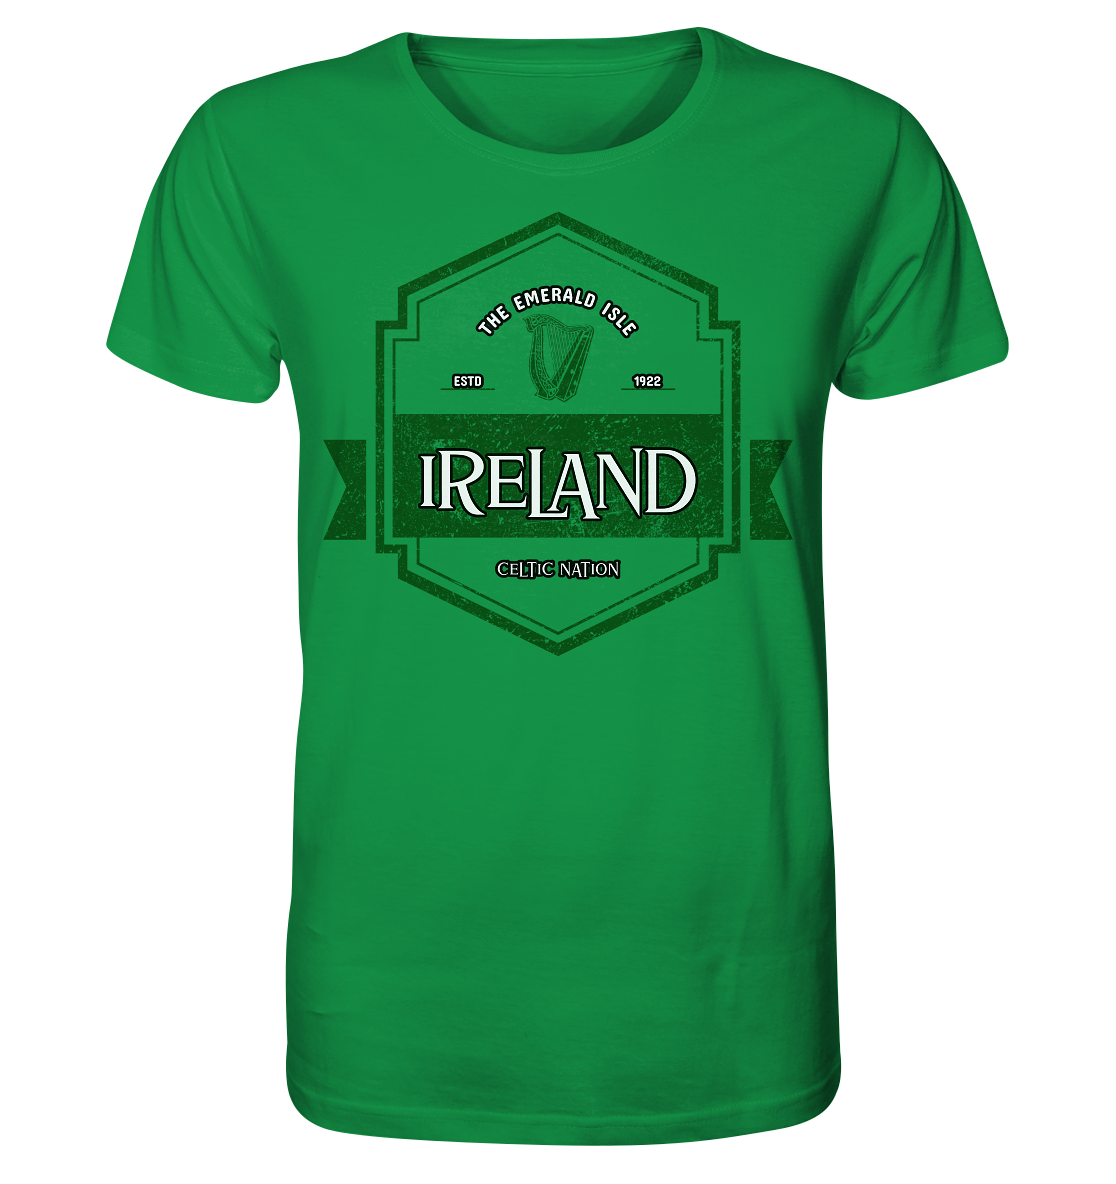 Ireland "The Emerald Isle / Celtic Nation" - Organic Shirt